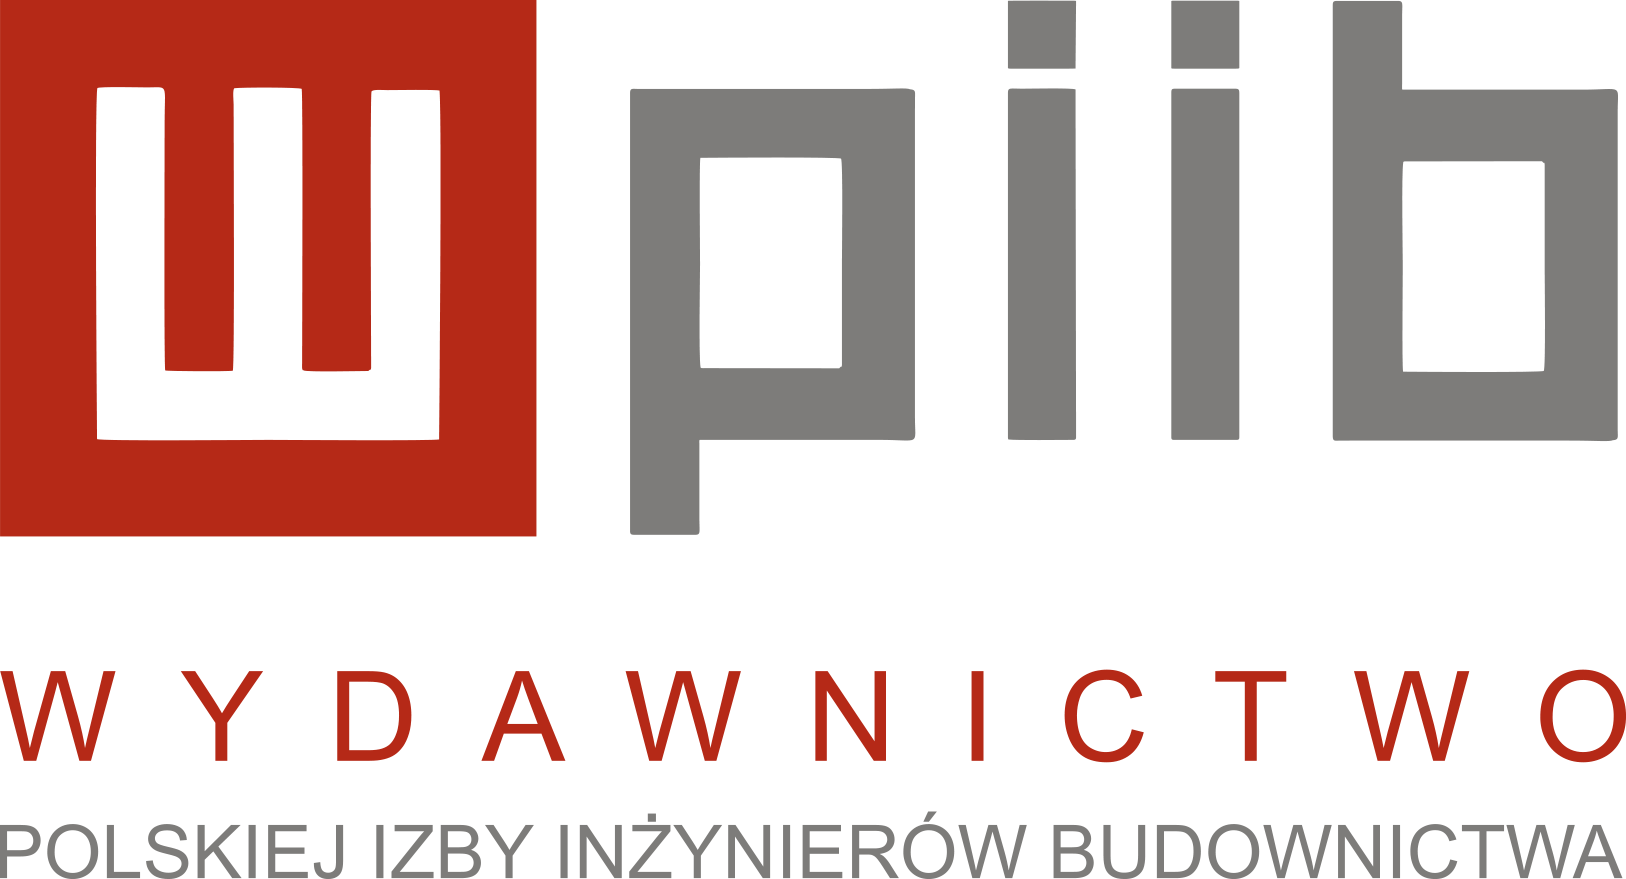 Wydawnictwo Polskiej Izby Inżynierów Budownictwa Sp. z o.o.